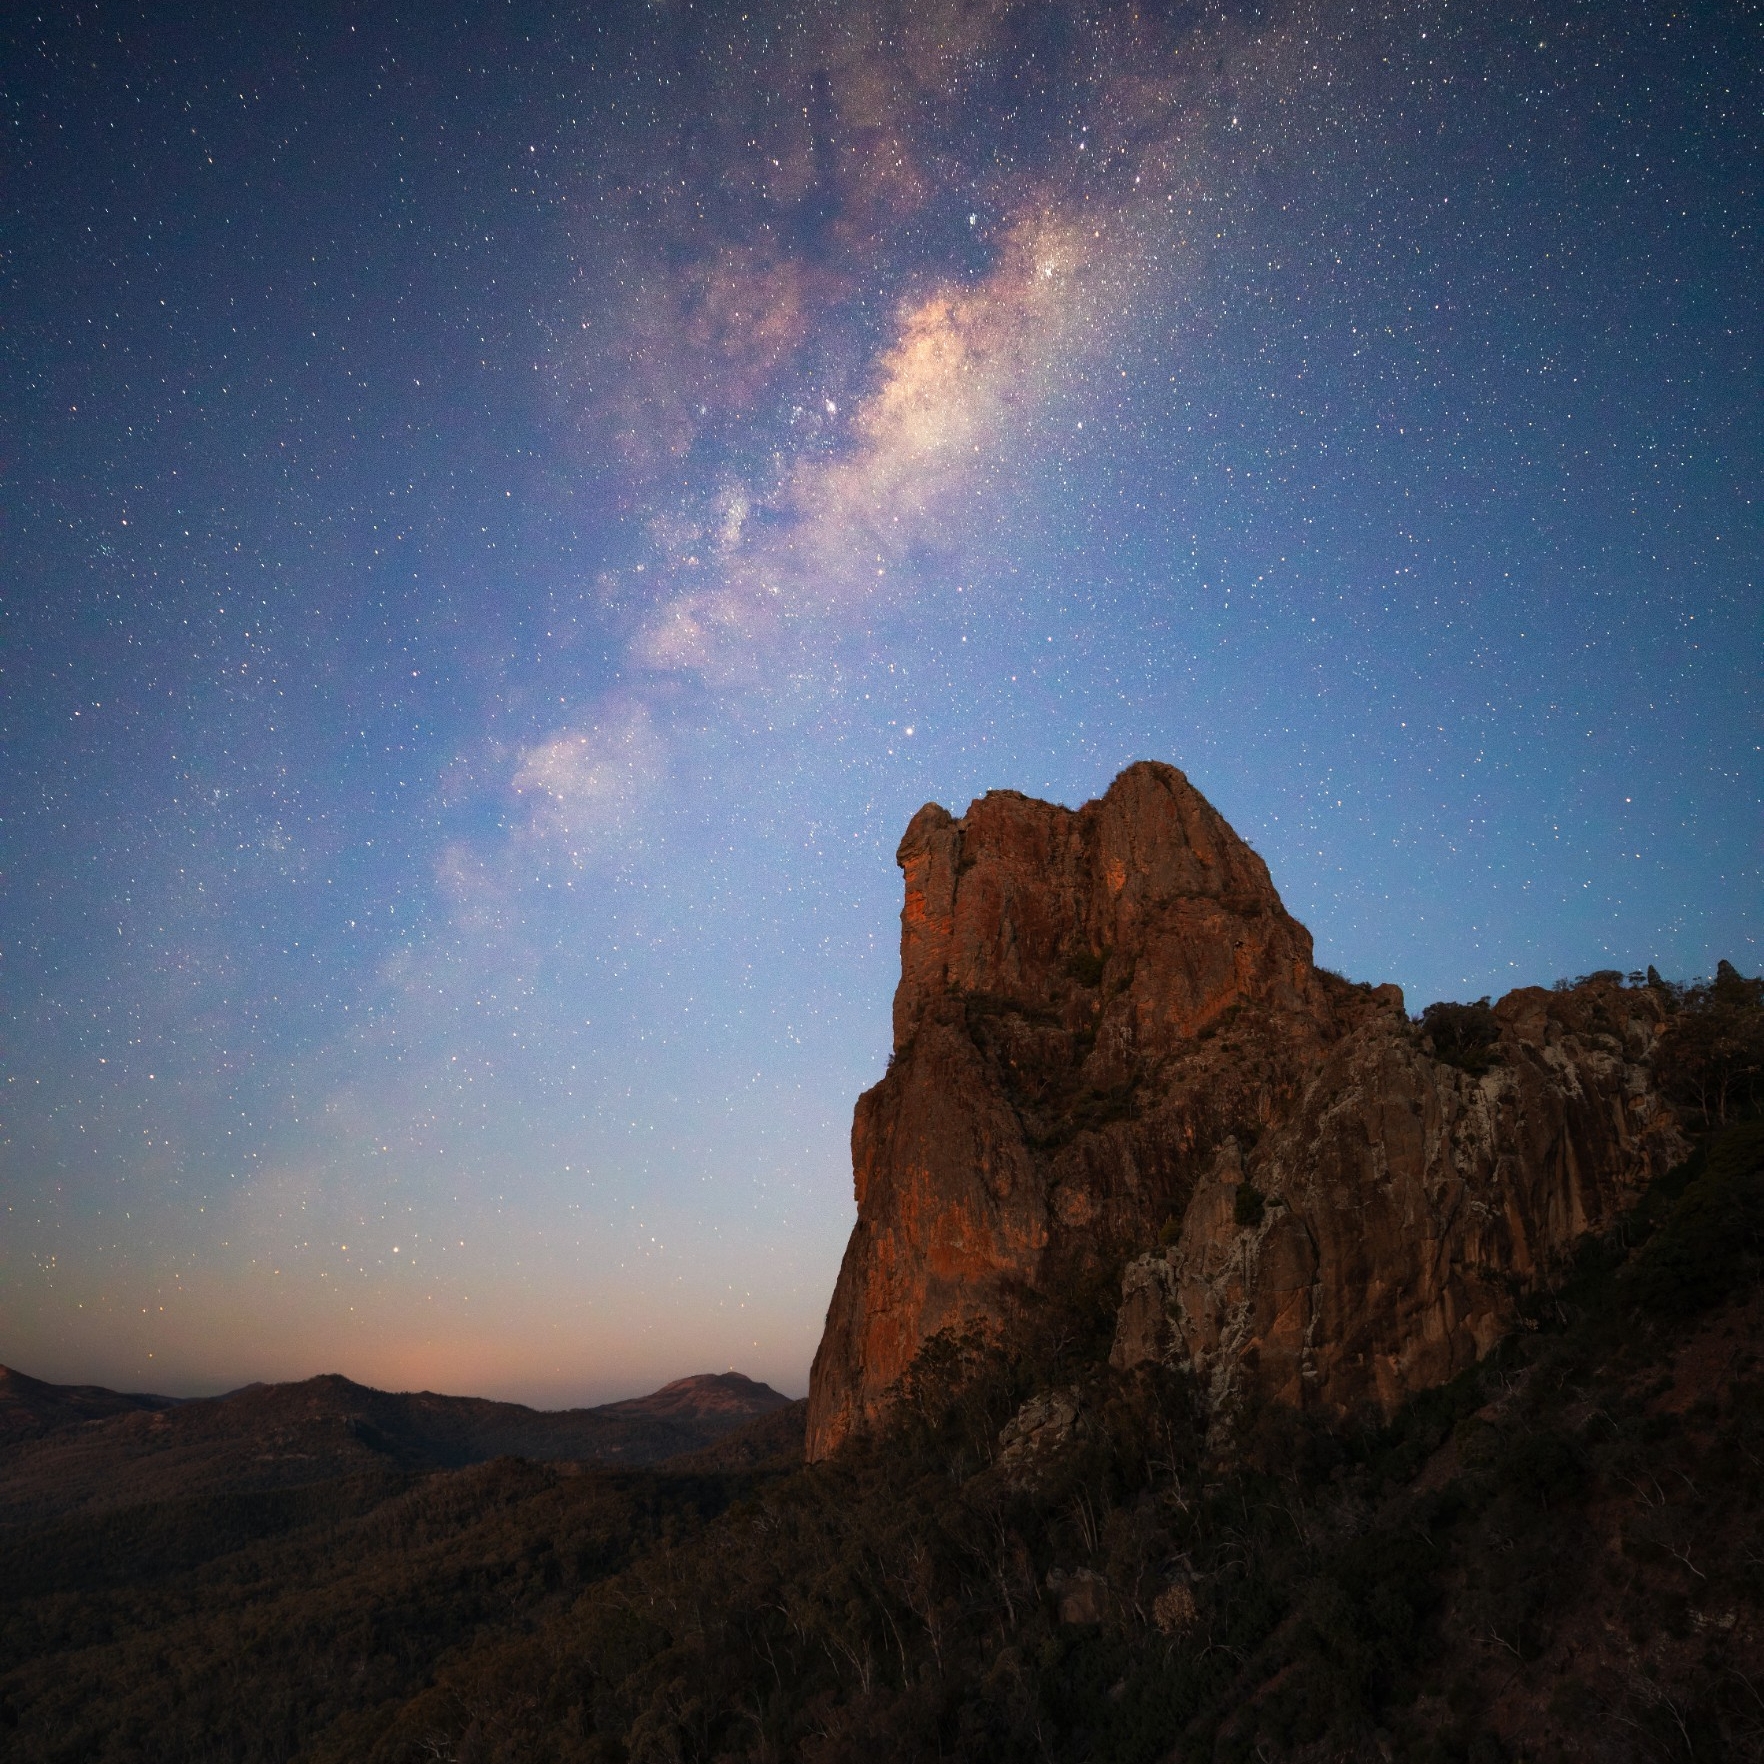 岩层上方的银河系景观 © 新南威尔士州旅游局版权所有